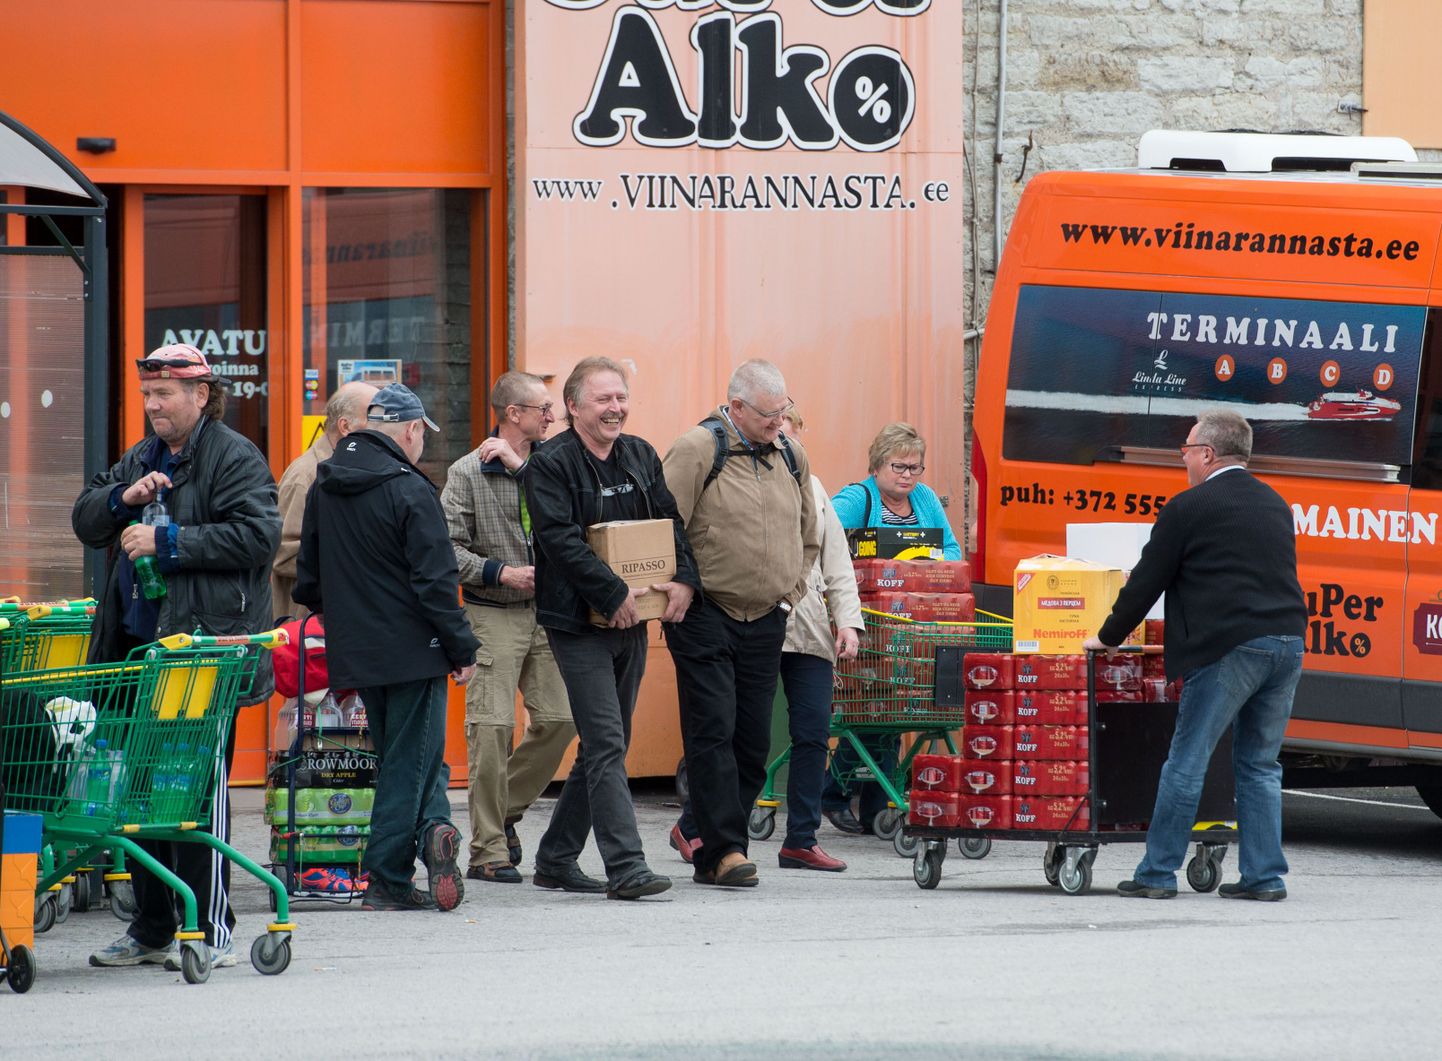 Soome turistid Tallinnas alkoholi ostmas.